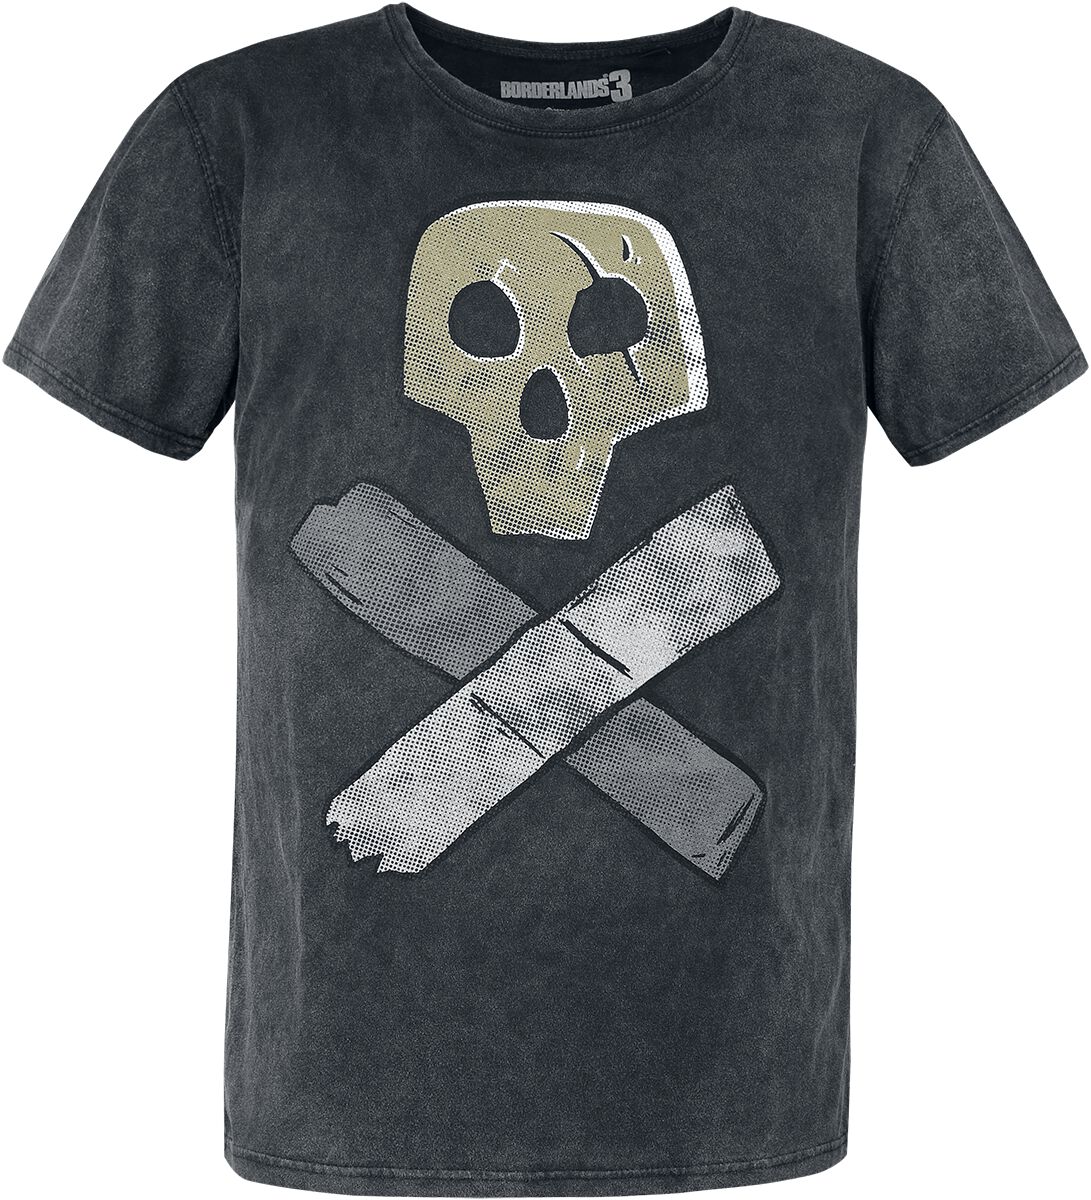 Borderlands - Gaming T-Shirt - 3 - Skull - S bis XL - für Männer - Größe L - grau  - EMP exklusives Merchandise!